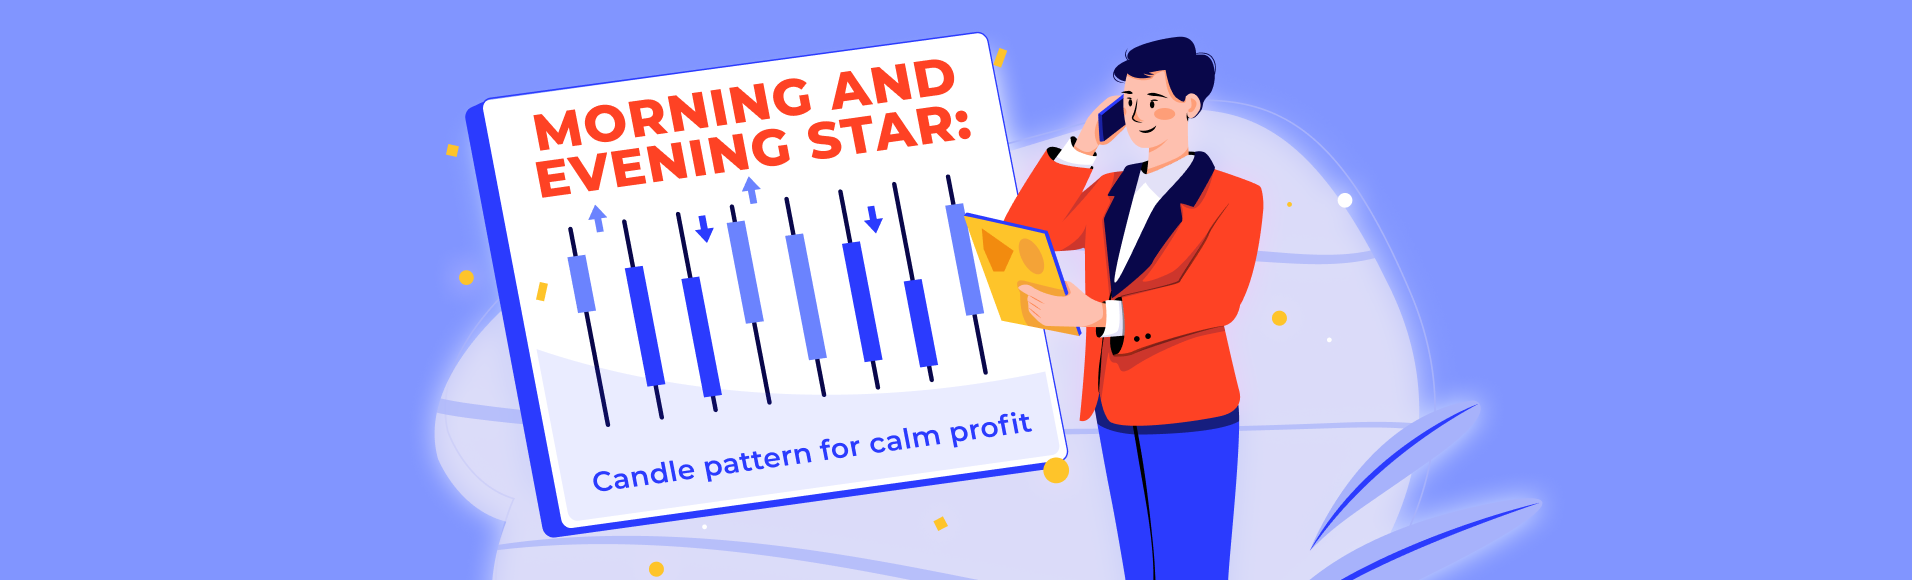 Morning and Evening Star: pola untuk keuntungan yang tenang